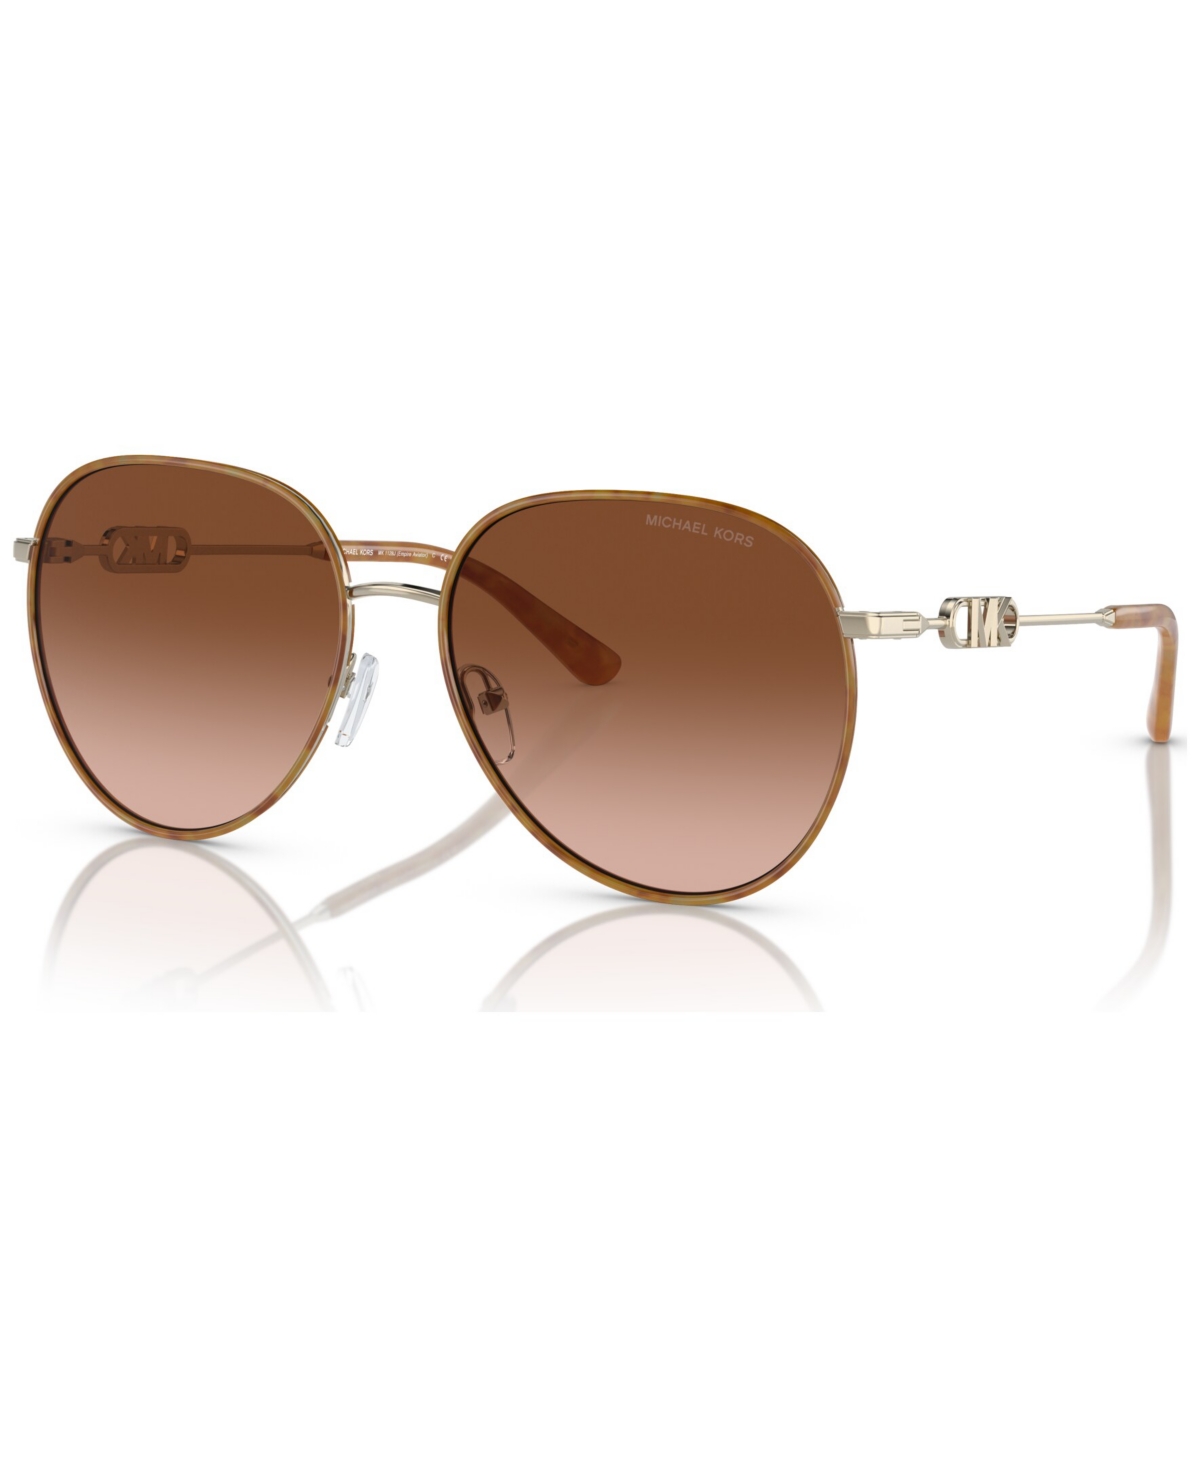 Michael Kors Women's Sunglasses, Empire In Light Gold-tone Amber Tortoise